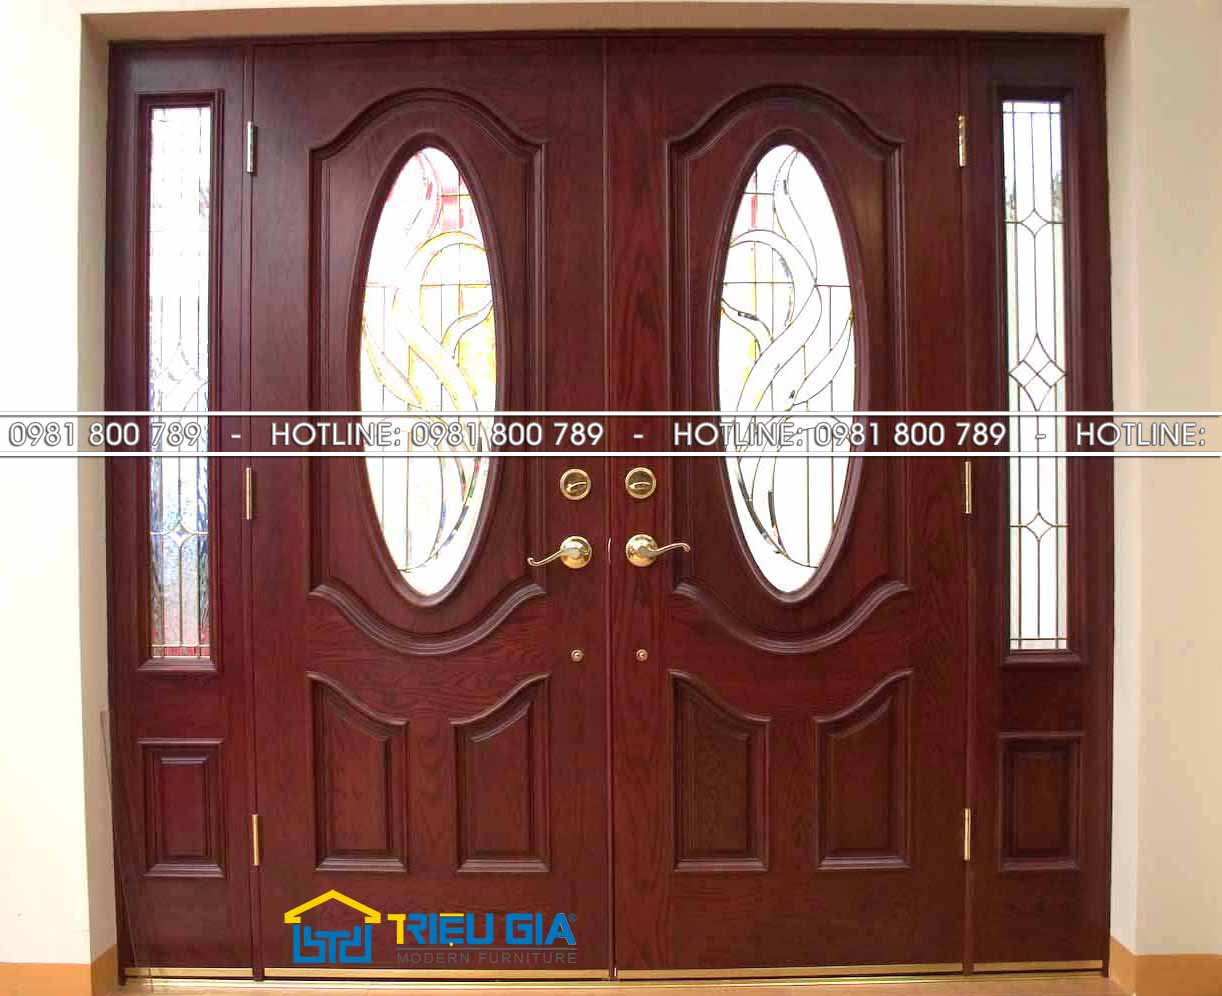 Thiết kế cửa gỗ lim hợp với gia đình bạn nhất từ Nội thất Triệu Gia